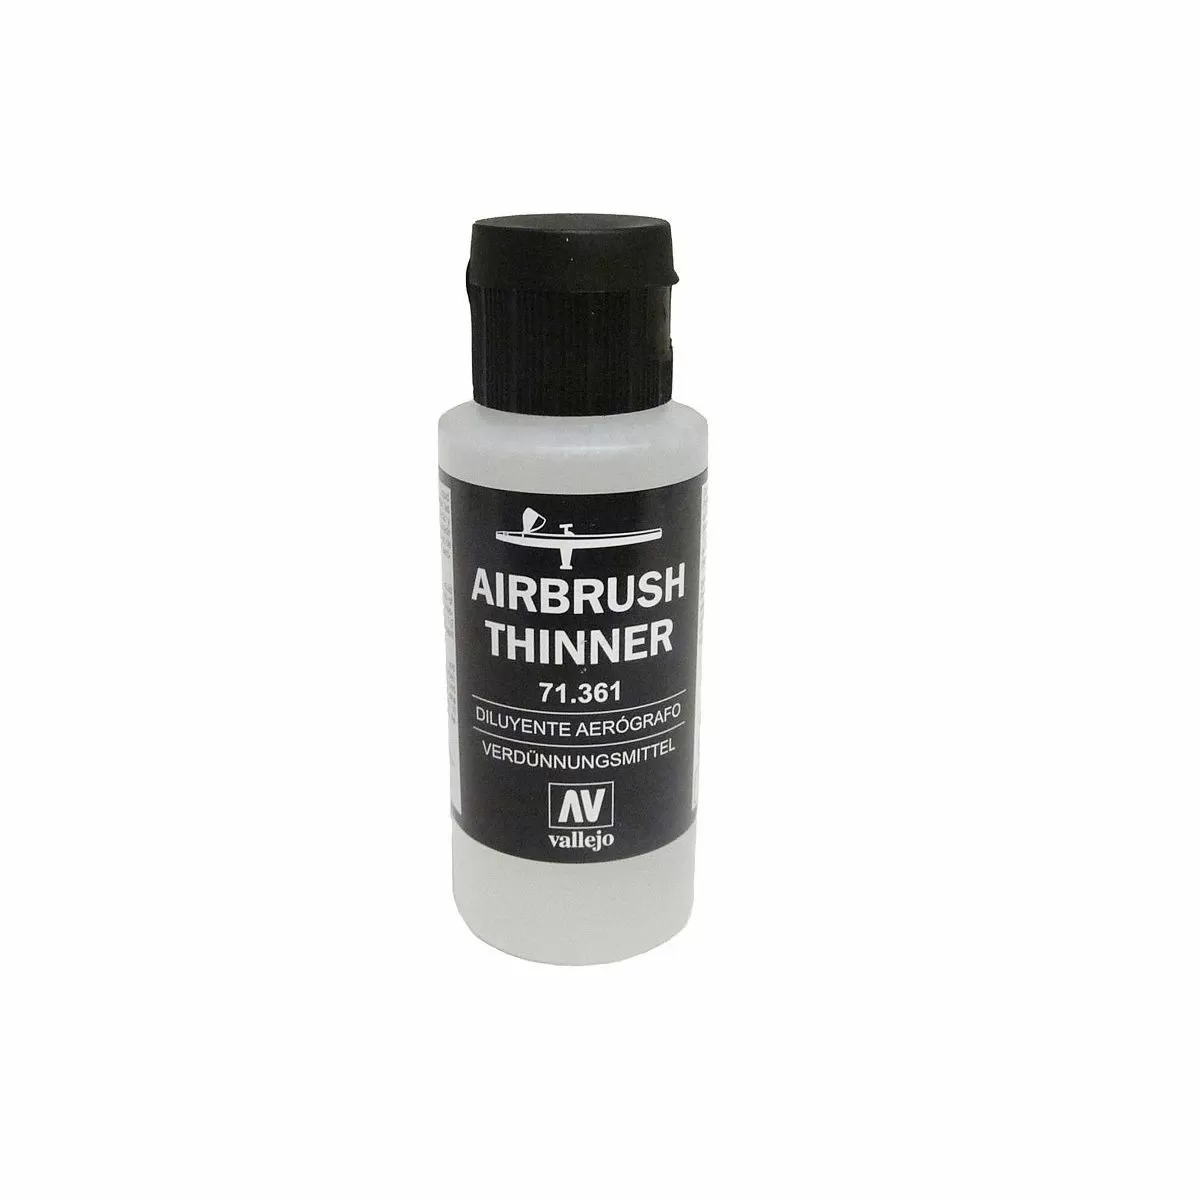 Warpaints Airbrush Mega Paint Set & Airbrush Paint Thinner Bundle 